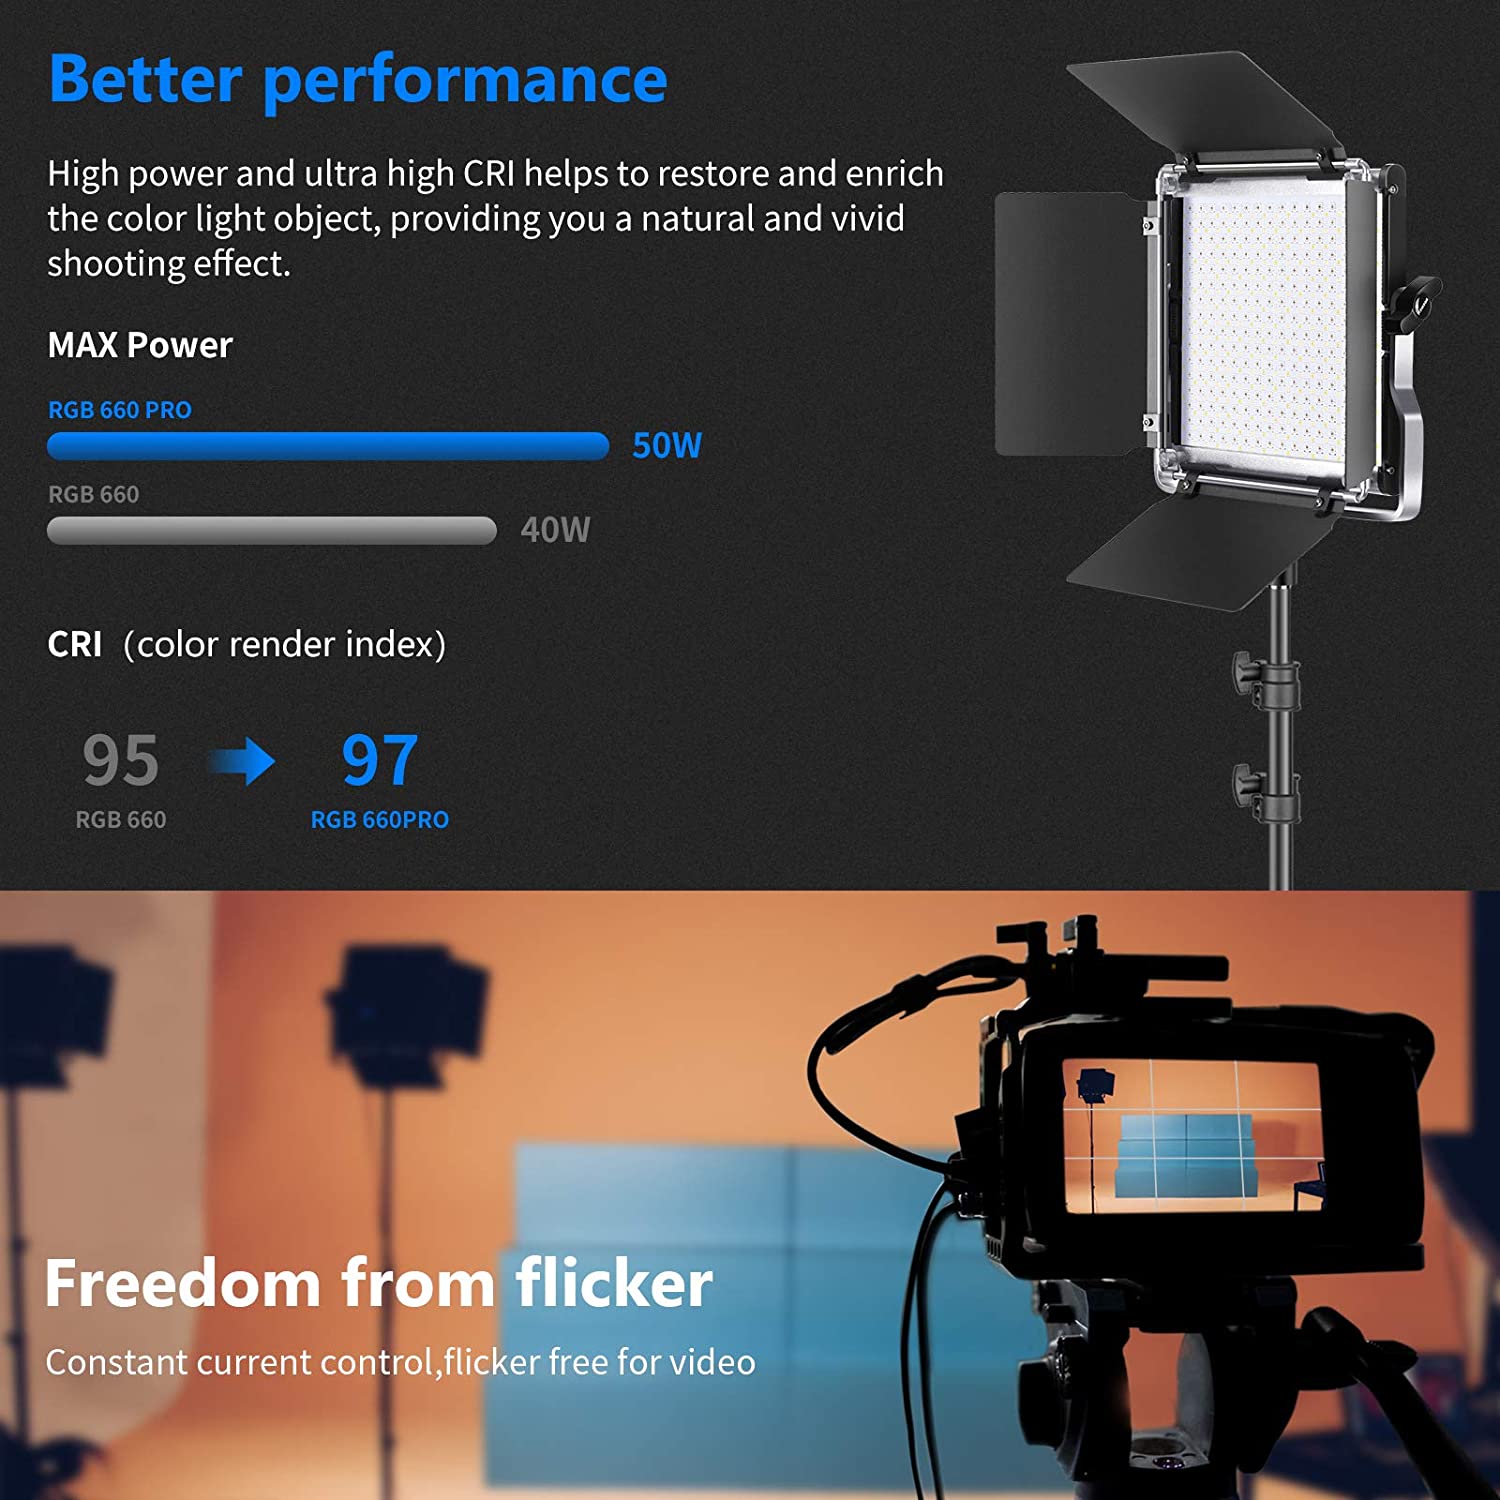 Best Affordable Video Light? – Neewer Upgraded 660 Bi-Color LED